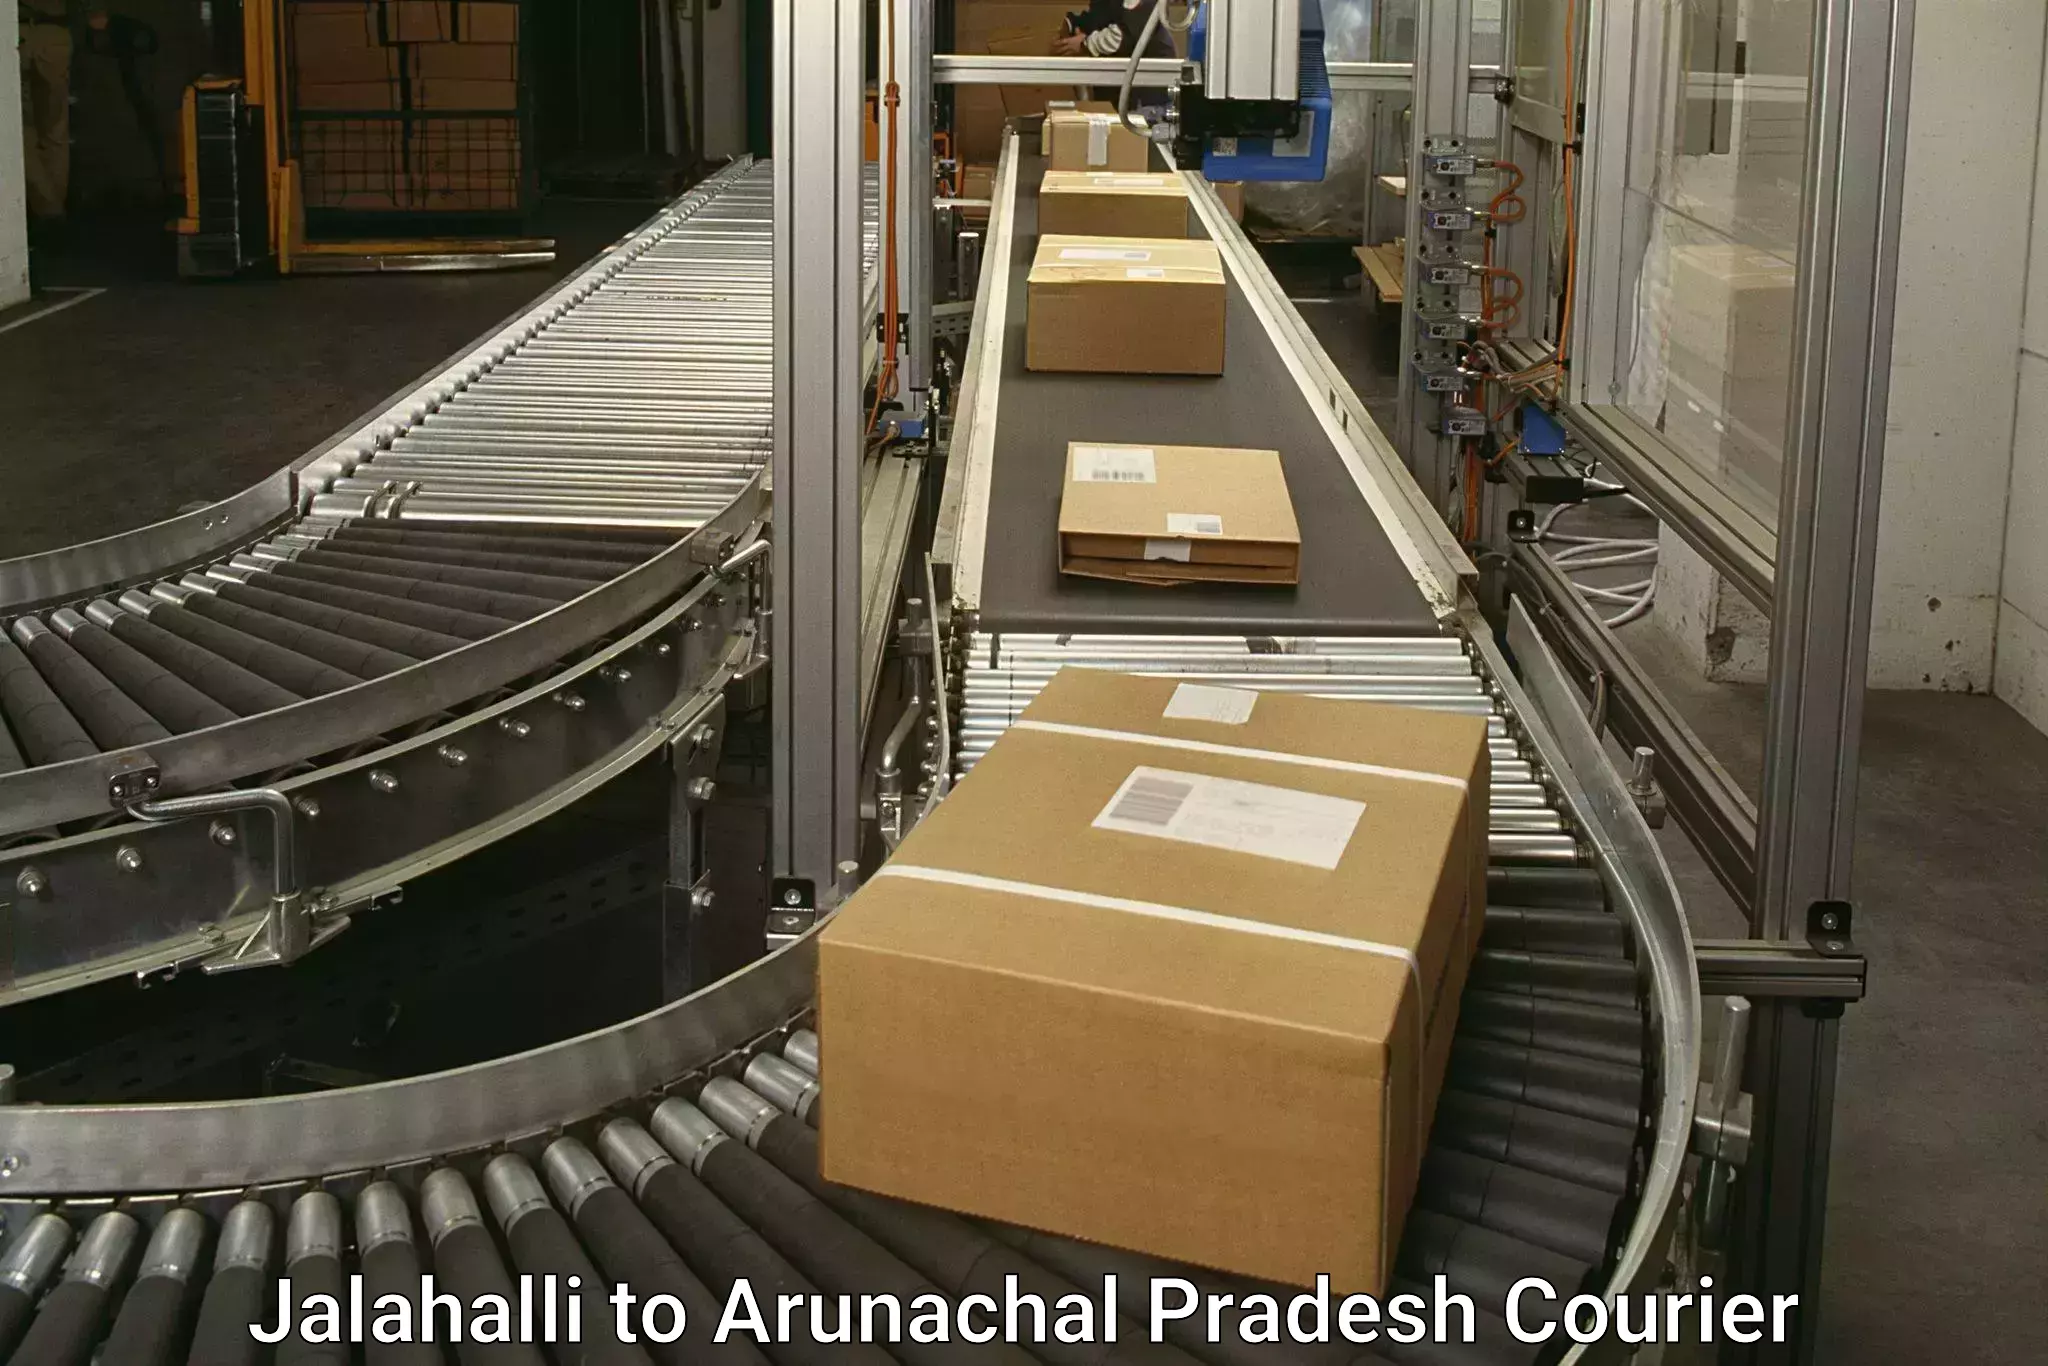 Ground shipping Jalahalli to Naharlagun